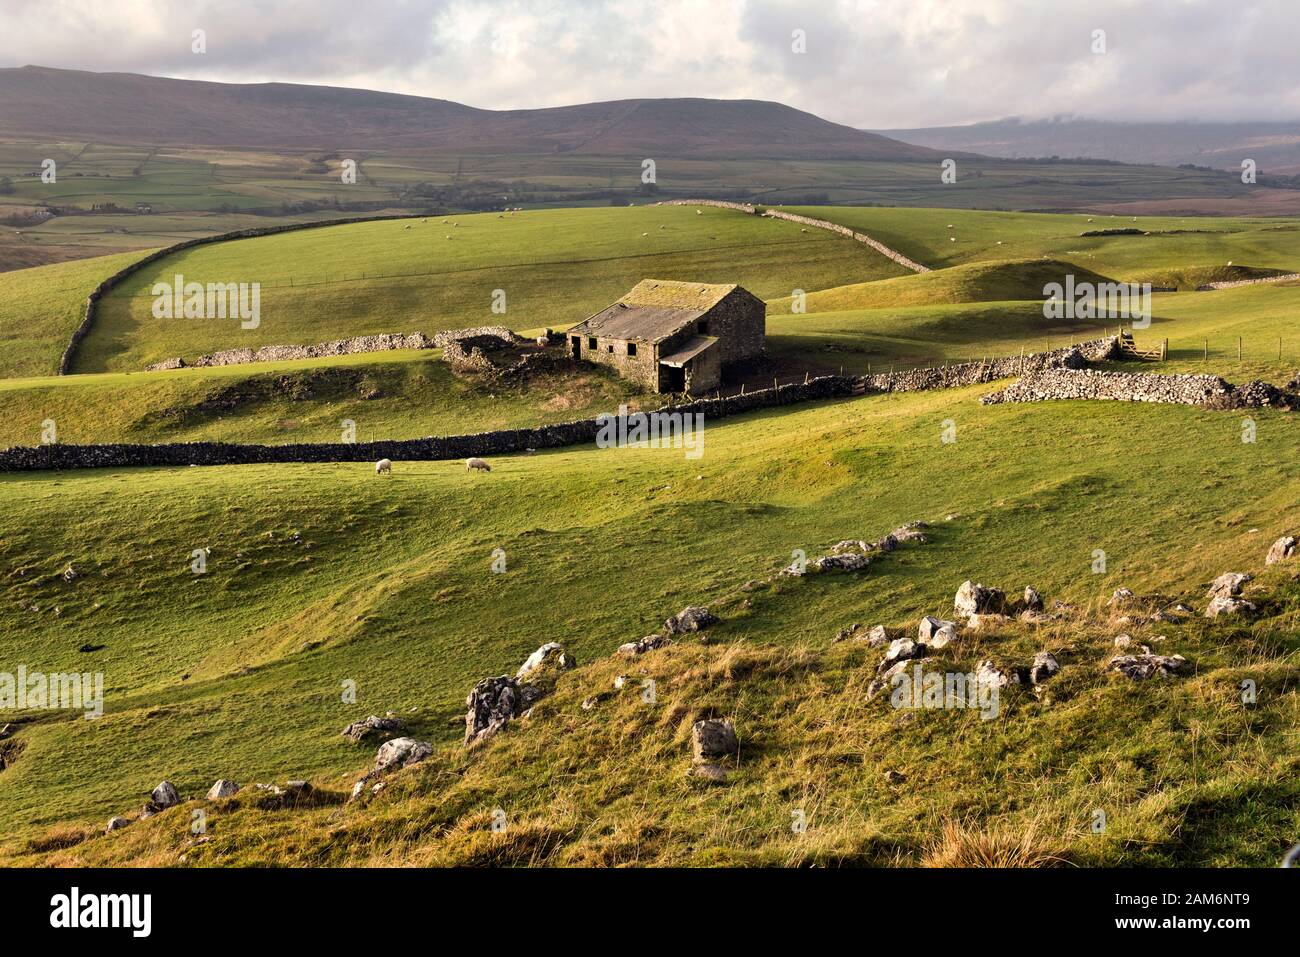 Paste de ovejas en los valles de Yorkshire cerca de Horton-in-Ribblesdale. Central es un típico granero de dales viejos o "casa de vaca". Los cerrojos son tambores glaciales. Foto de stock